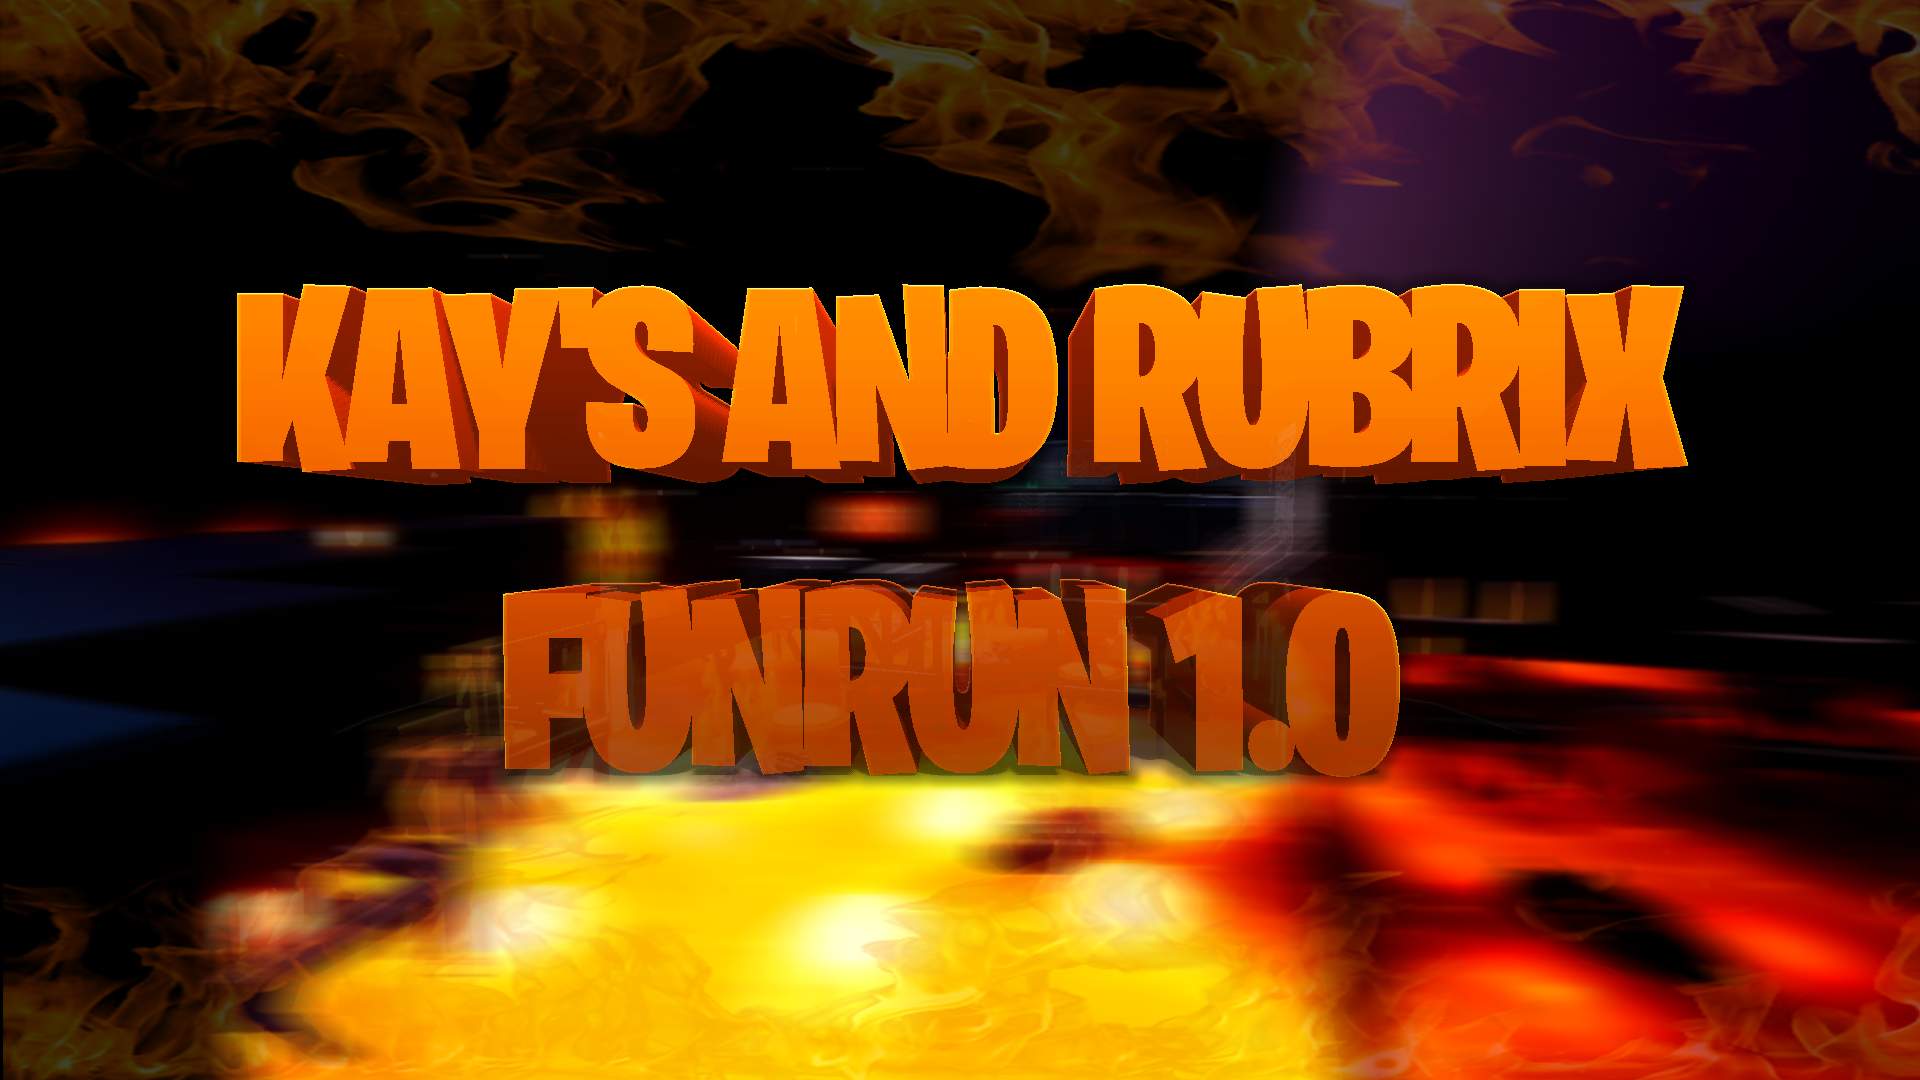 KAY'S AND RUBRIX FUNRUN 1.0